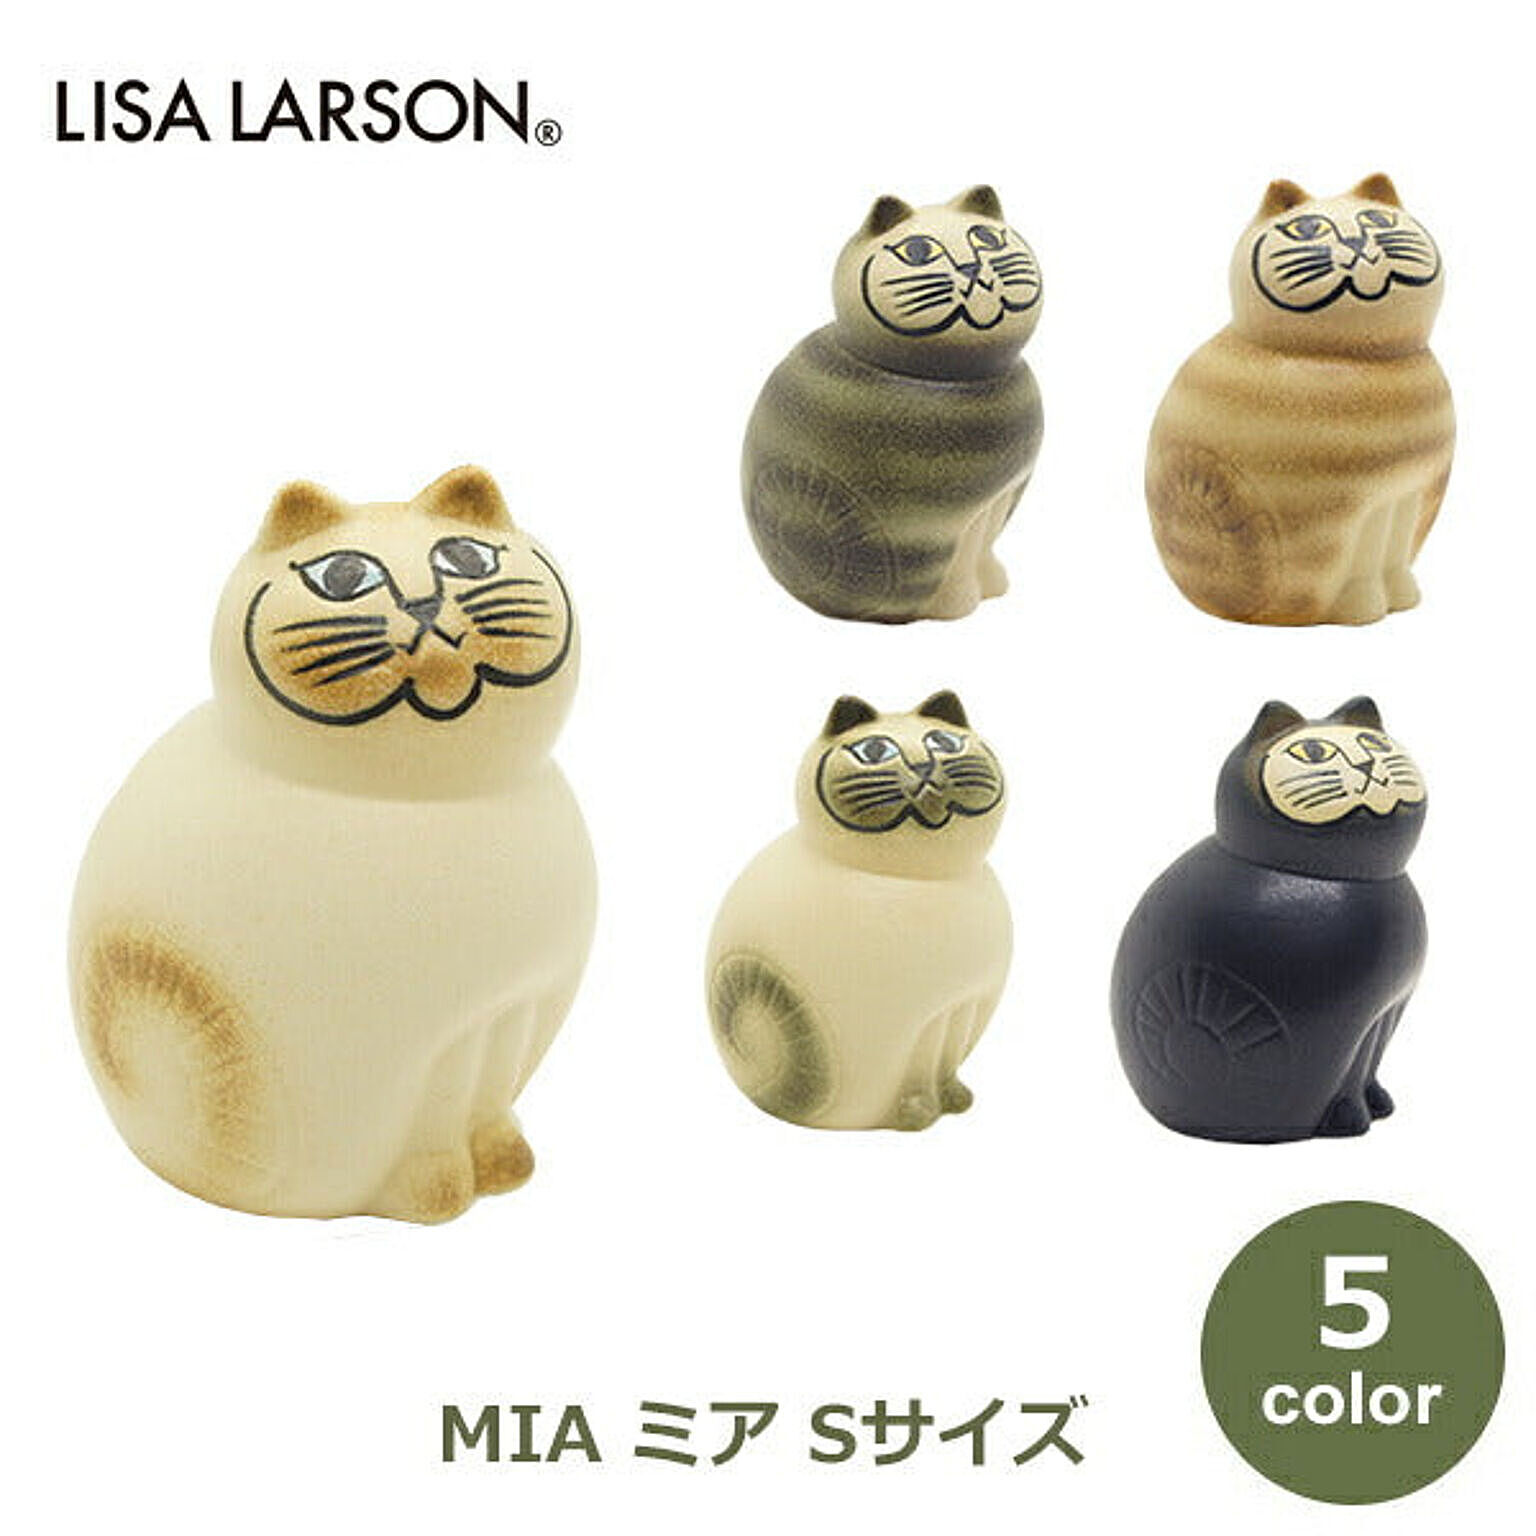 LISA LARSON / ミア S